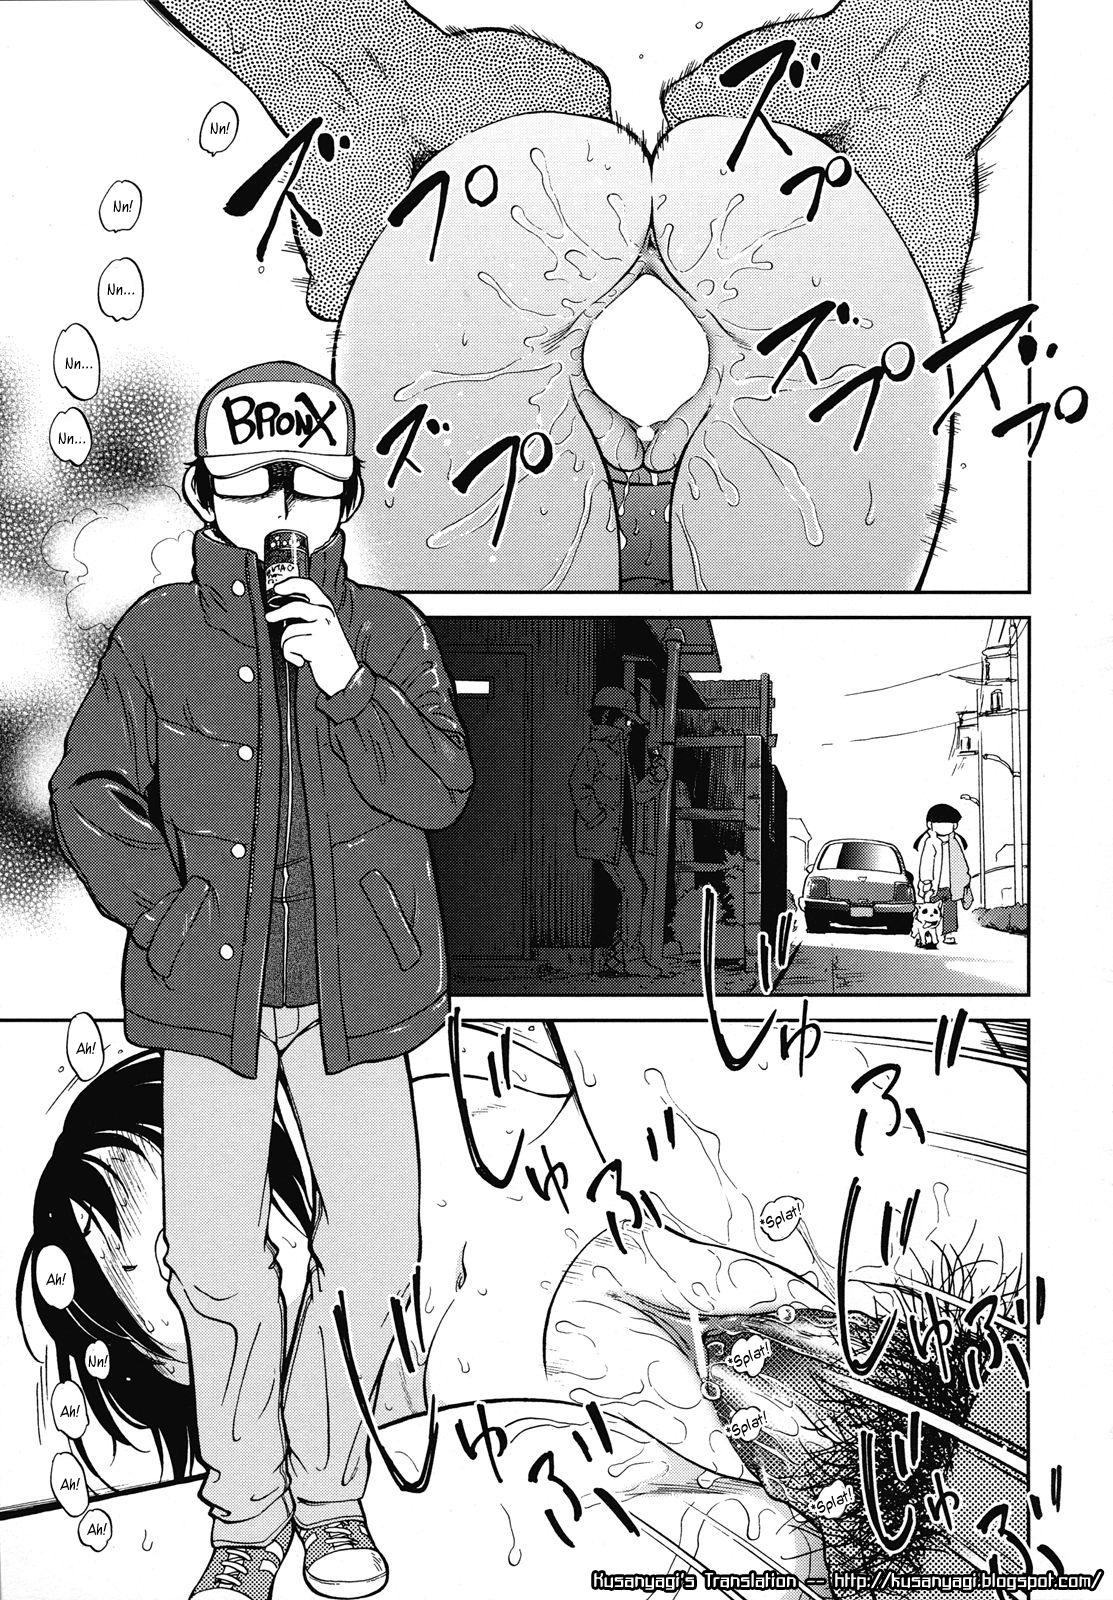 Okashi no Ie | A Strange House Page 1 Of 24 hentai manga, Okashi no Ie | A ...